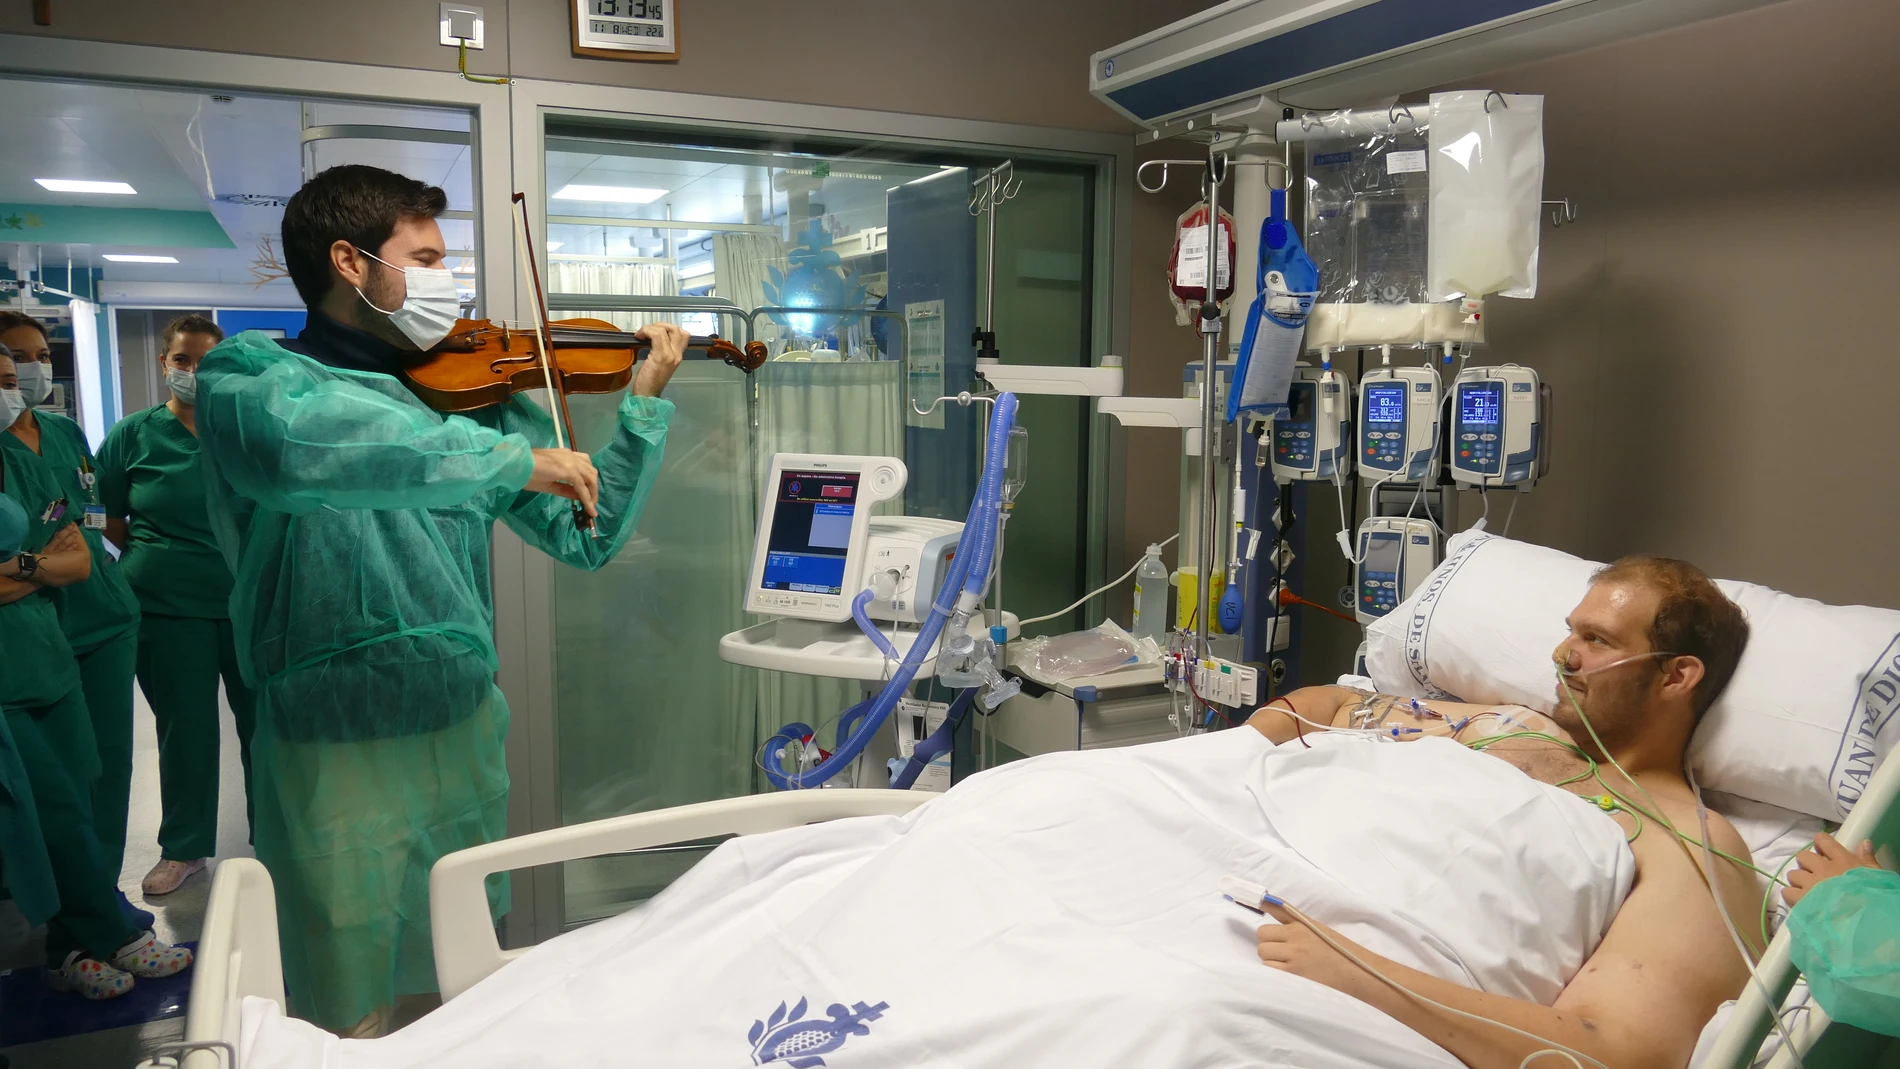 GRAFAND6361. CÓRDOBA, 09/11/2023.- El violinista Paco Montalvo (Córdoba, 1992) ha tocado dos piezas para un paciente intervenido quirúrgicamente de un proceso oncológico en un hospital privado de Córdoba como parte del proceso para contribuir a impulsar su recuperación física y mejorar su ánimo, siguiendo un criterio facultativo. EFE/Hospital san Juan de Dios/SOLO USO EDITORIAL/SOLO DISPONIBLE PARA ILUSTRAR LA NOTICIA QUE ACOMPAÑA (CRÉDITO OBLIGATORIO)